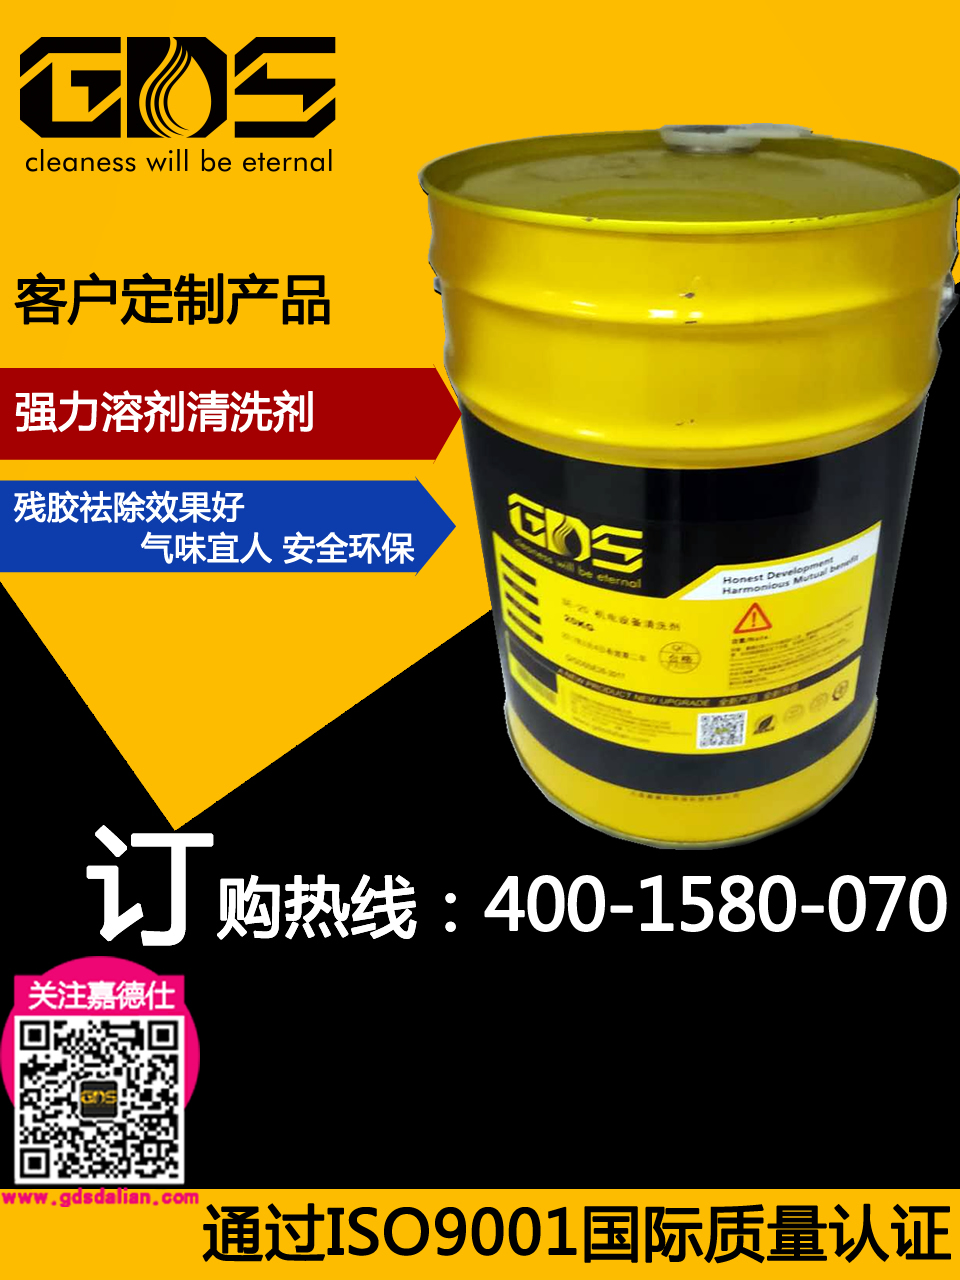 ST-61N 高效溶剂清洗剂